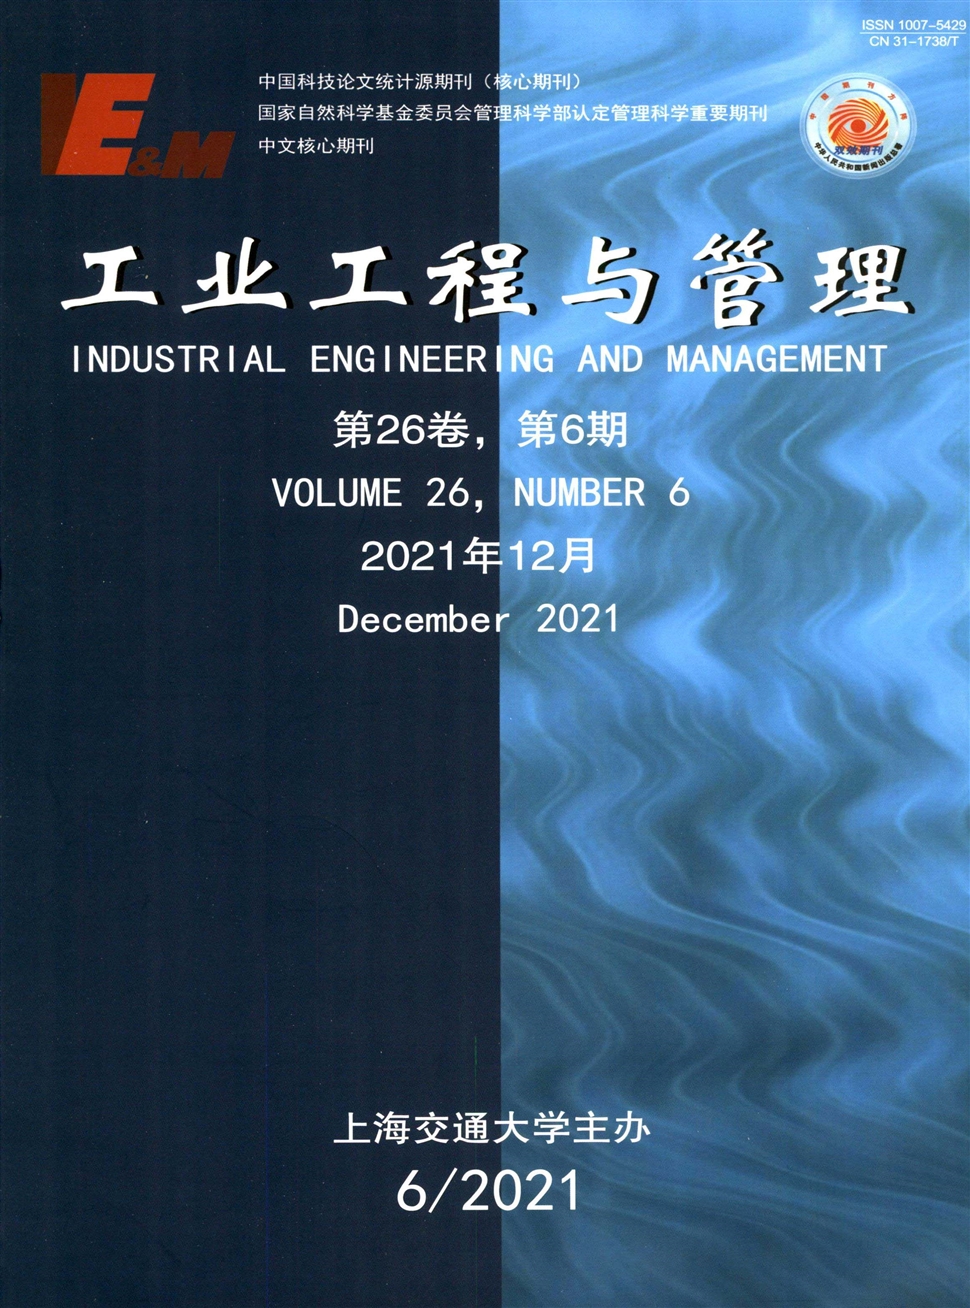 工业工程与管理杂志